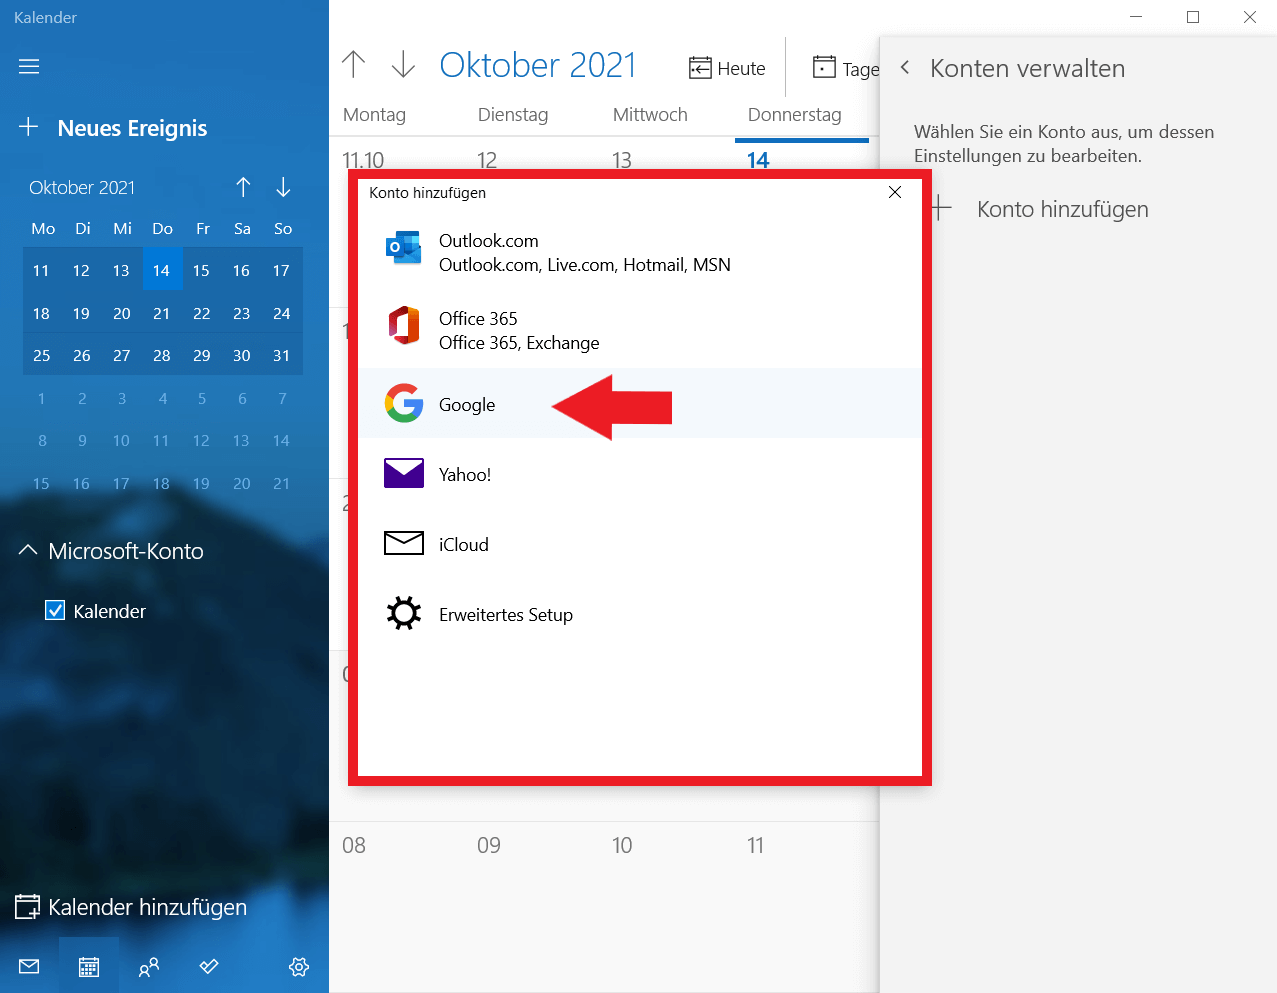 Windows-Kalender: Google als Konto hinzufügen